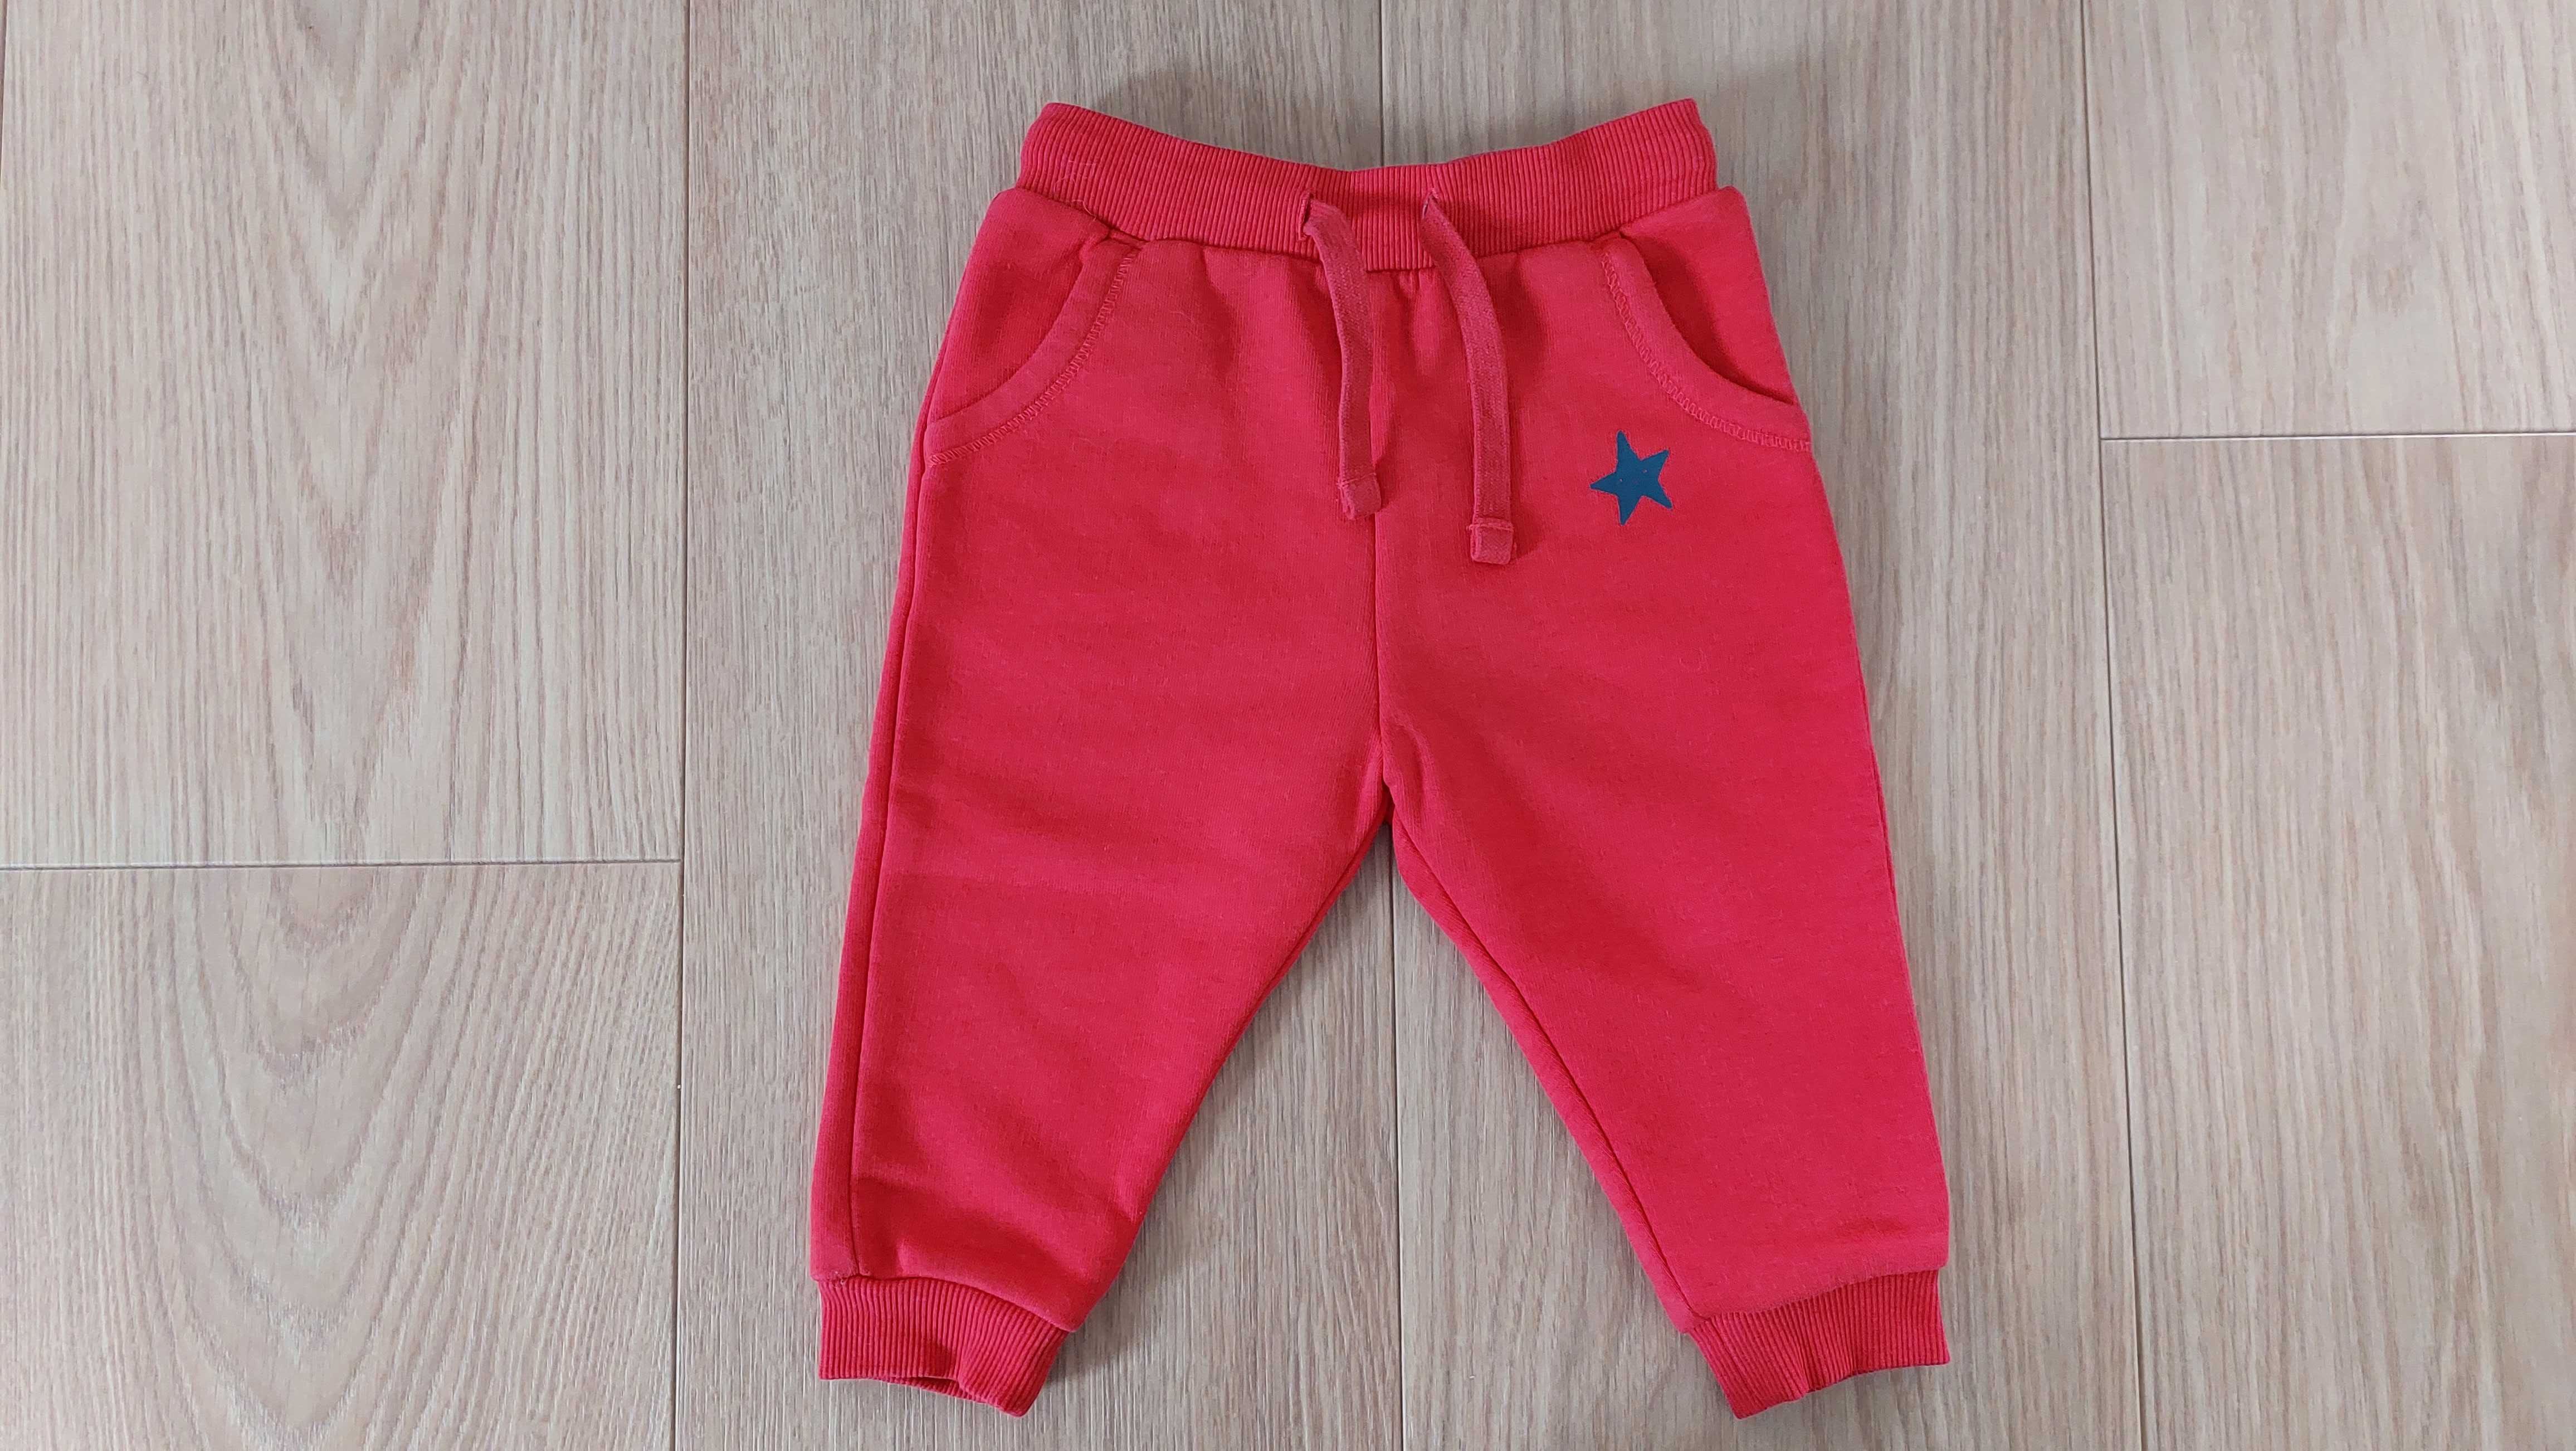 Ocieplane spodnie dla chłopca, czerwone i w paski_2szt._Tex_rozm. 74